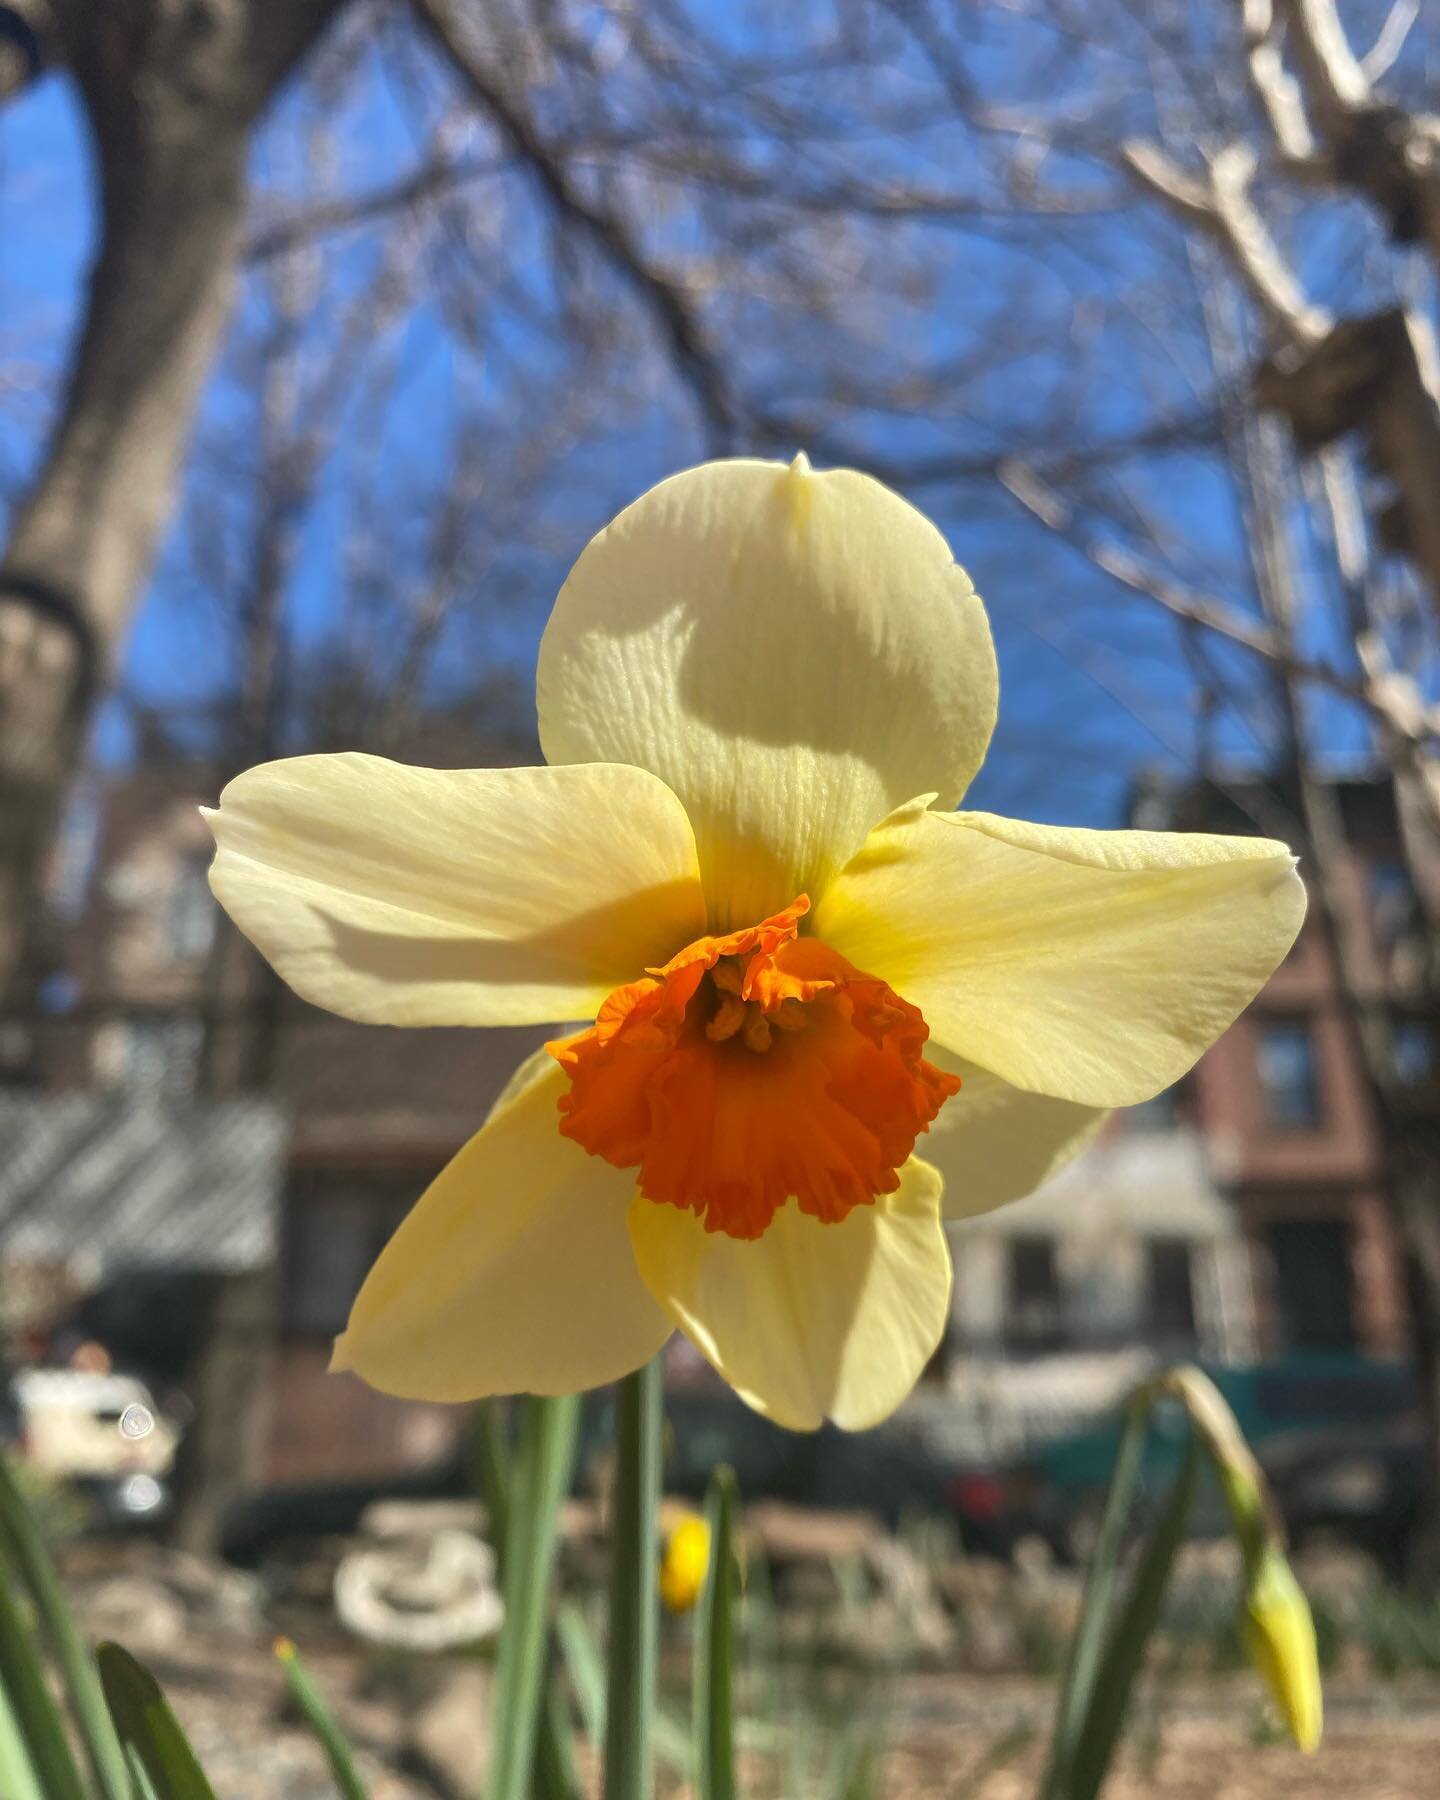 Blossom by blossom the spring begins. ~ Algernon Charles Swinburne

Flower of the season: Daffodils!

#harlemrosegarden